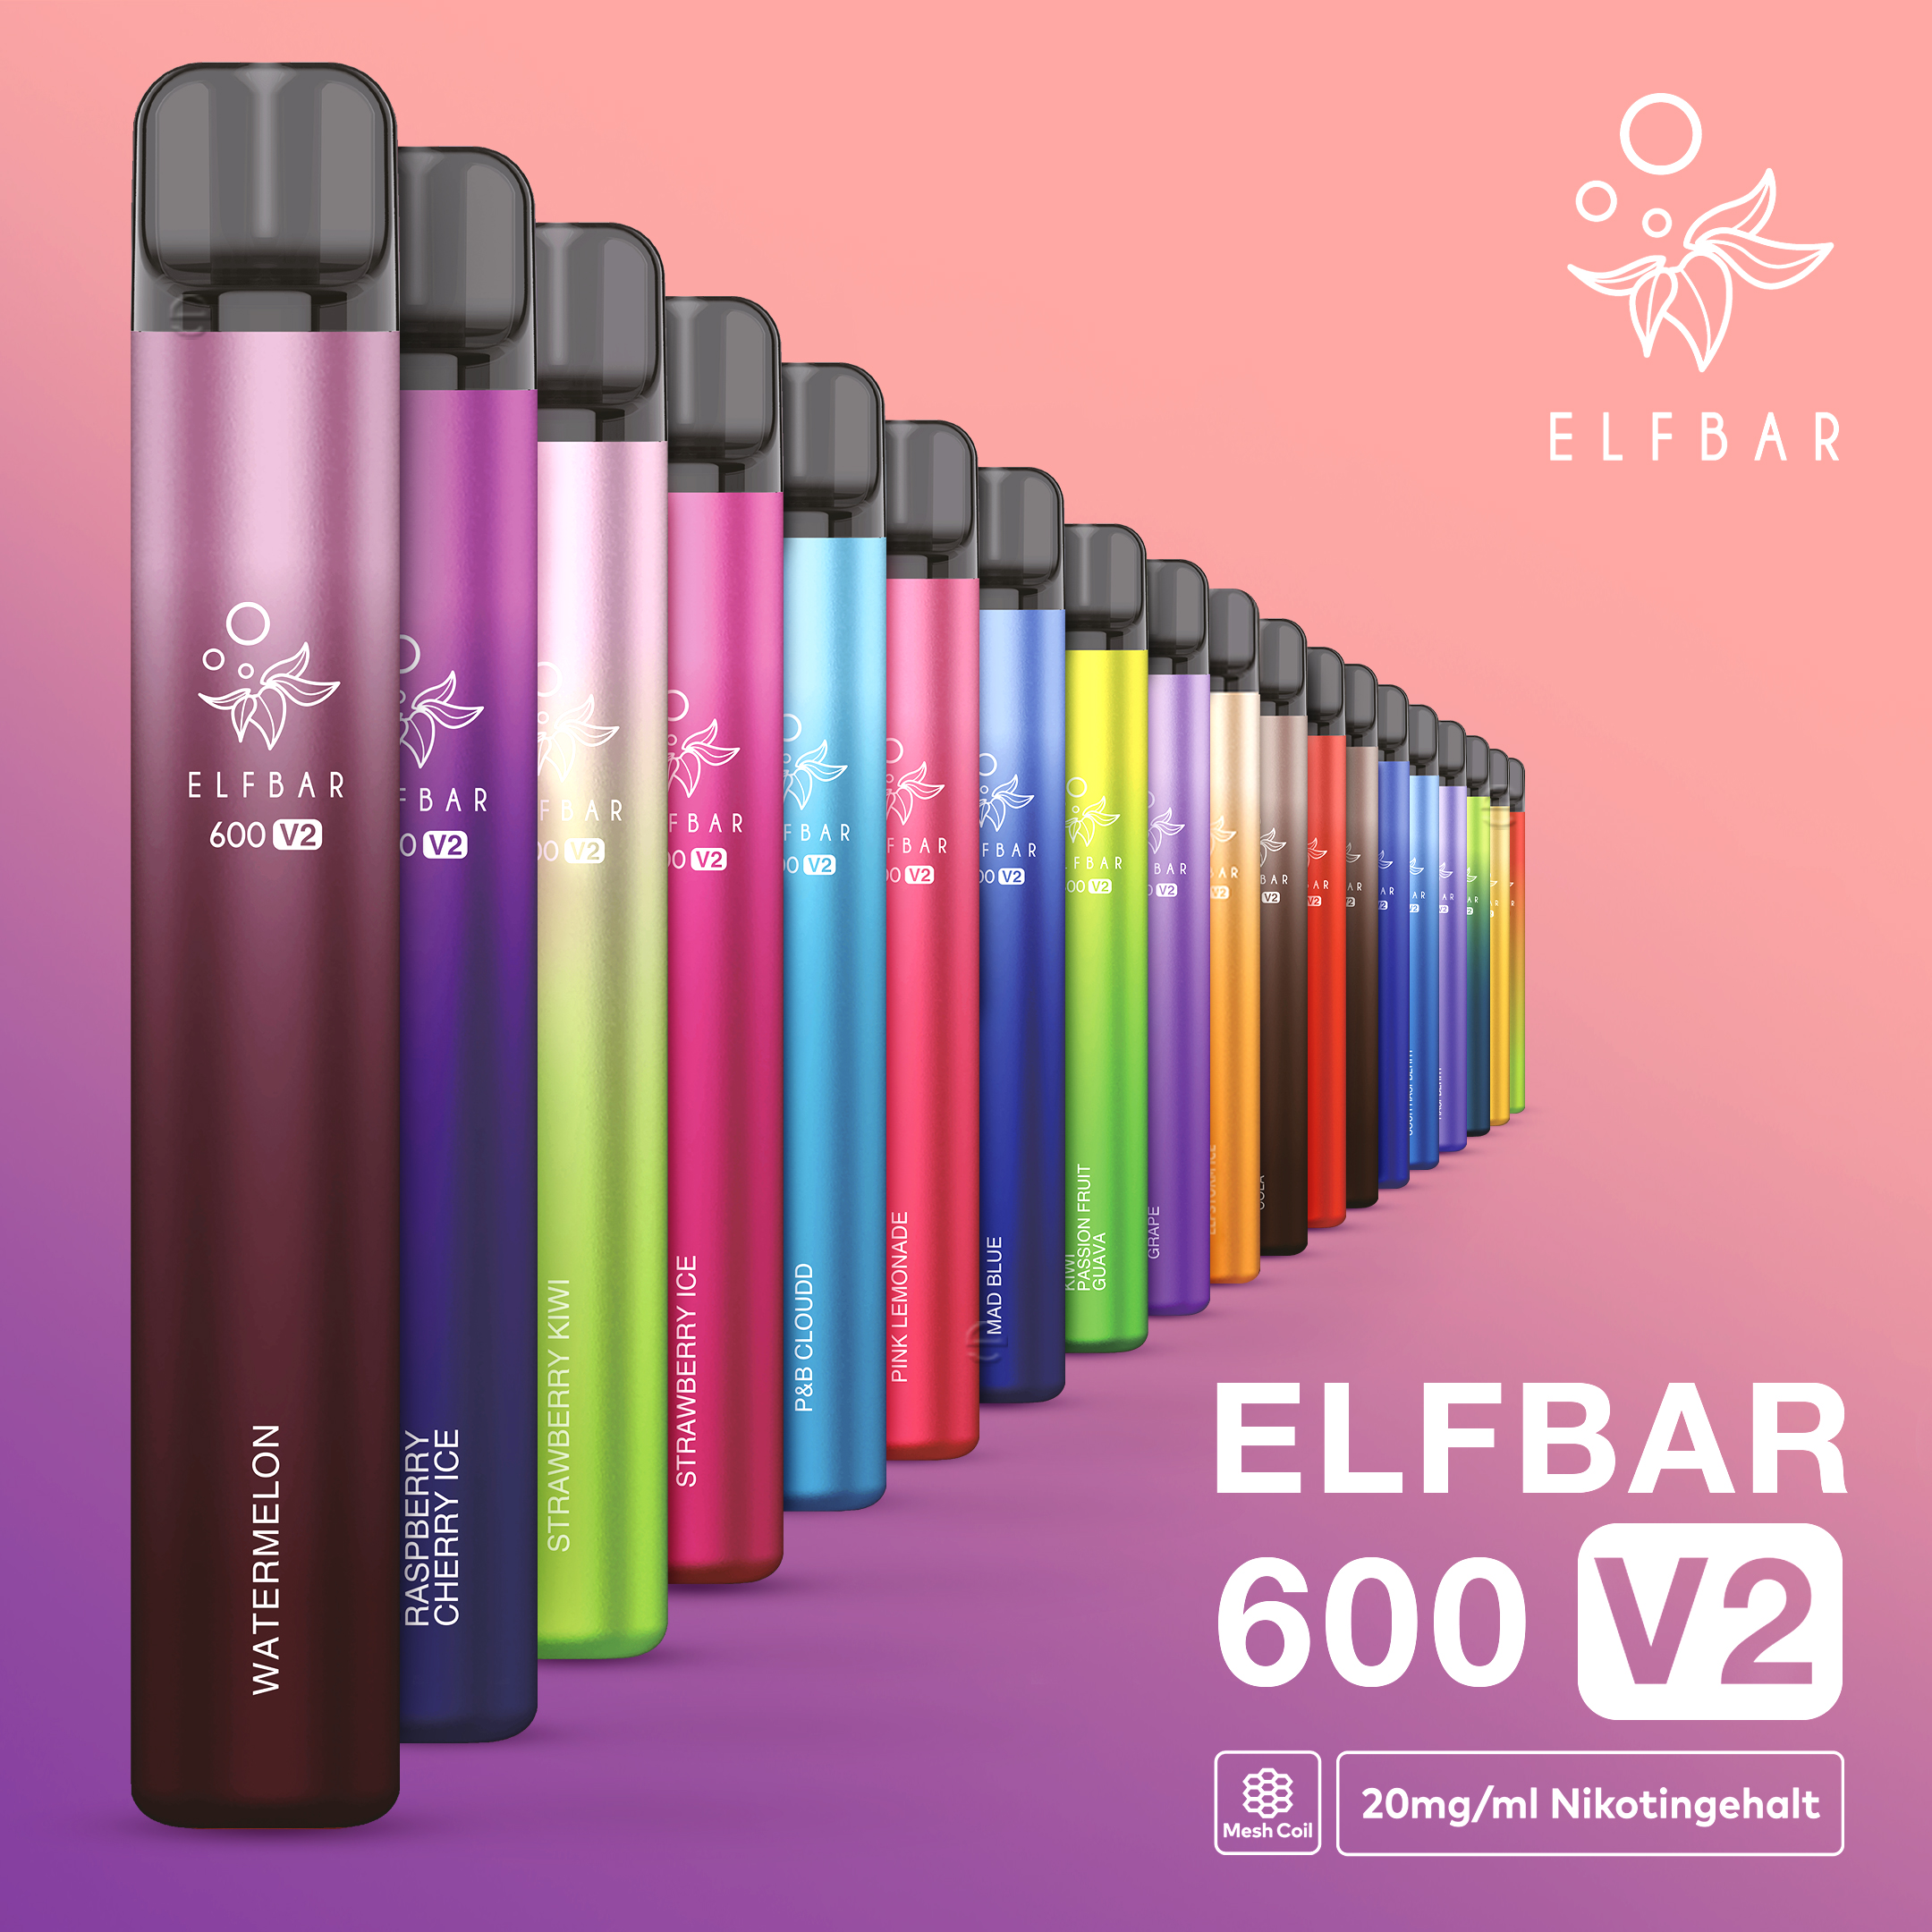 ELFBAR 600 Strawberry Ice Einweg E Zigarette V2 20mg/ml